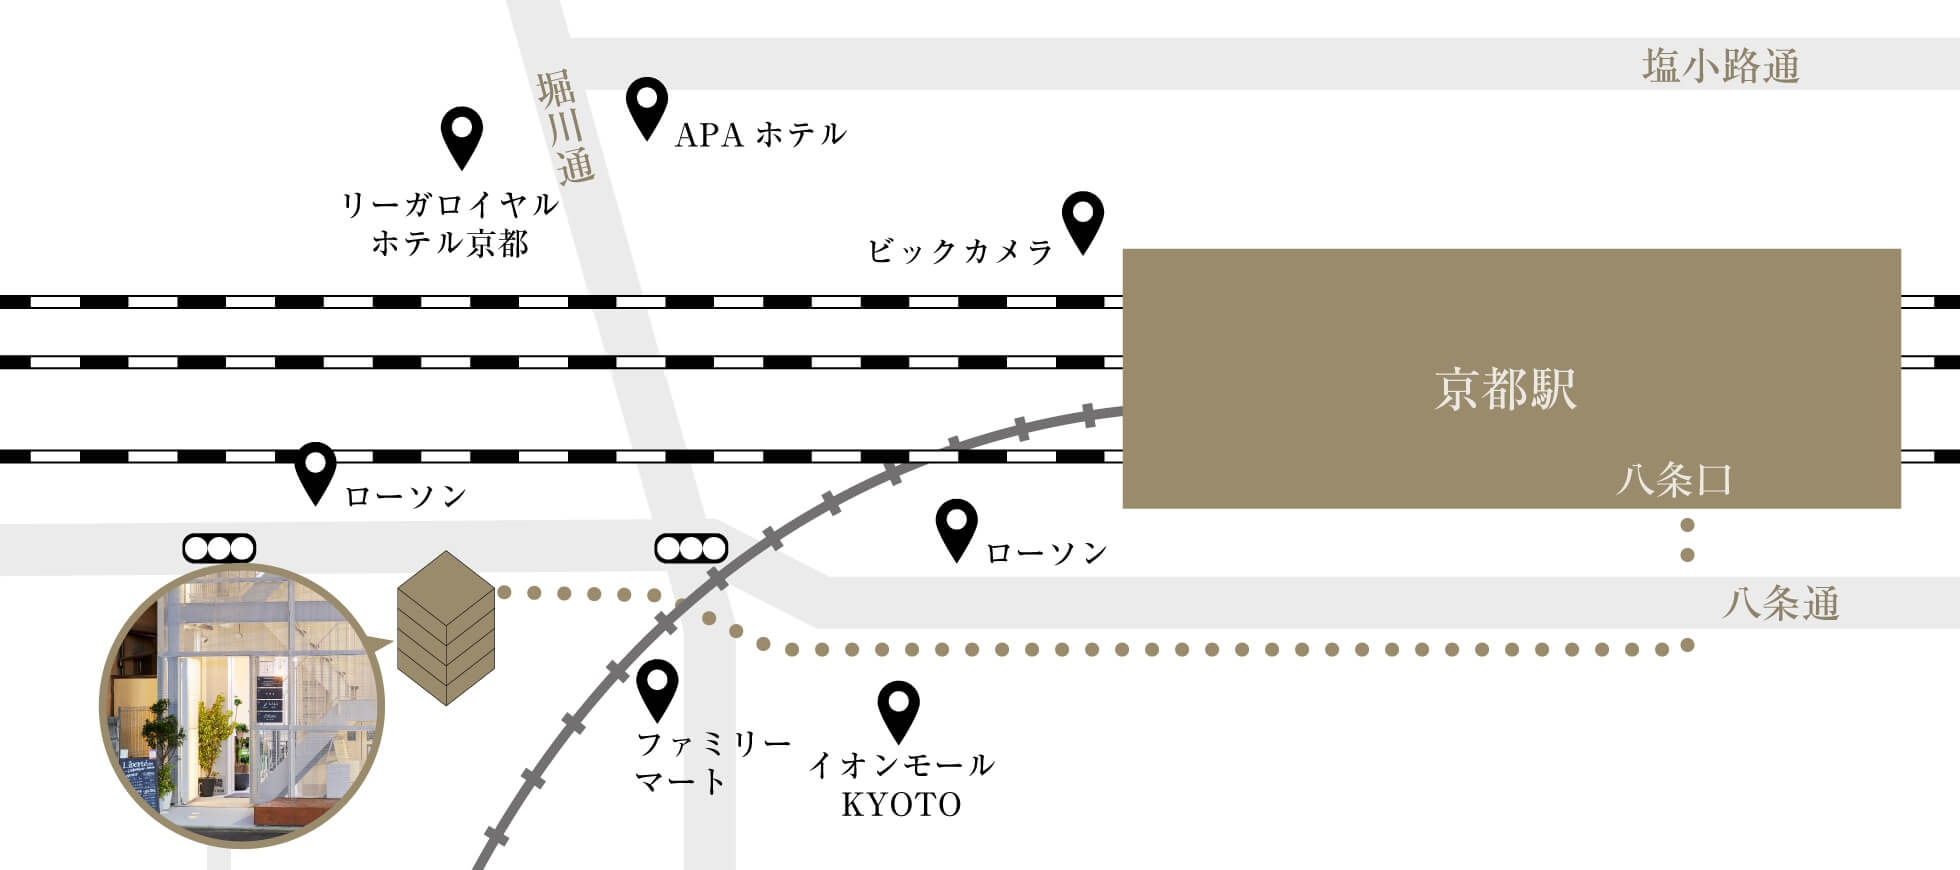 京都駅から金星ビルへの経路地図